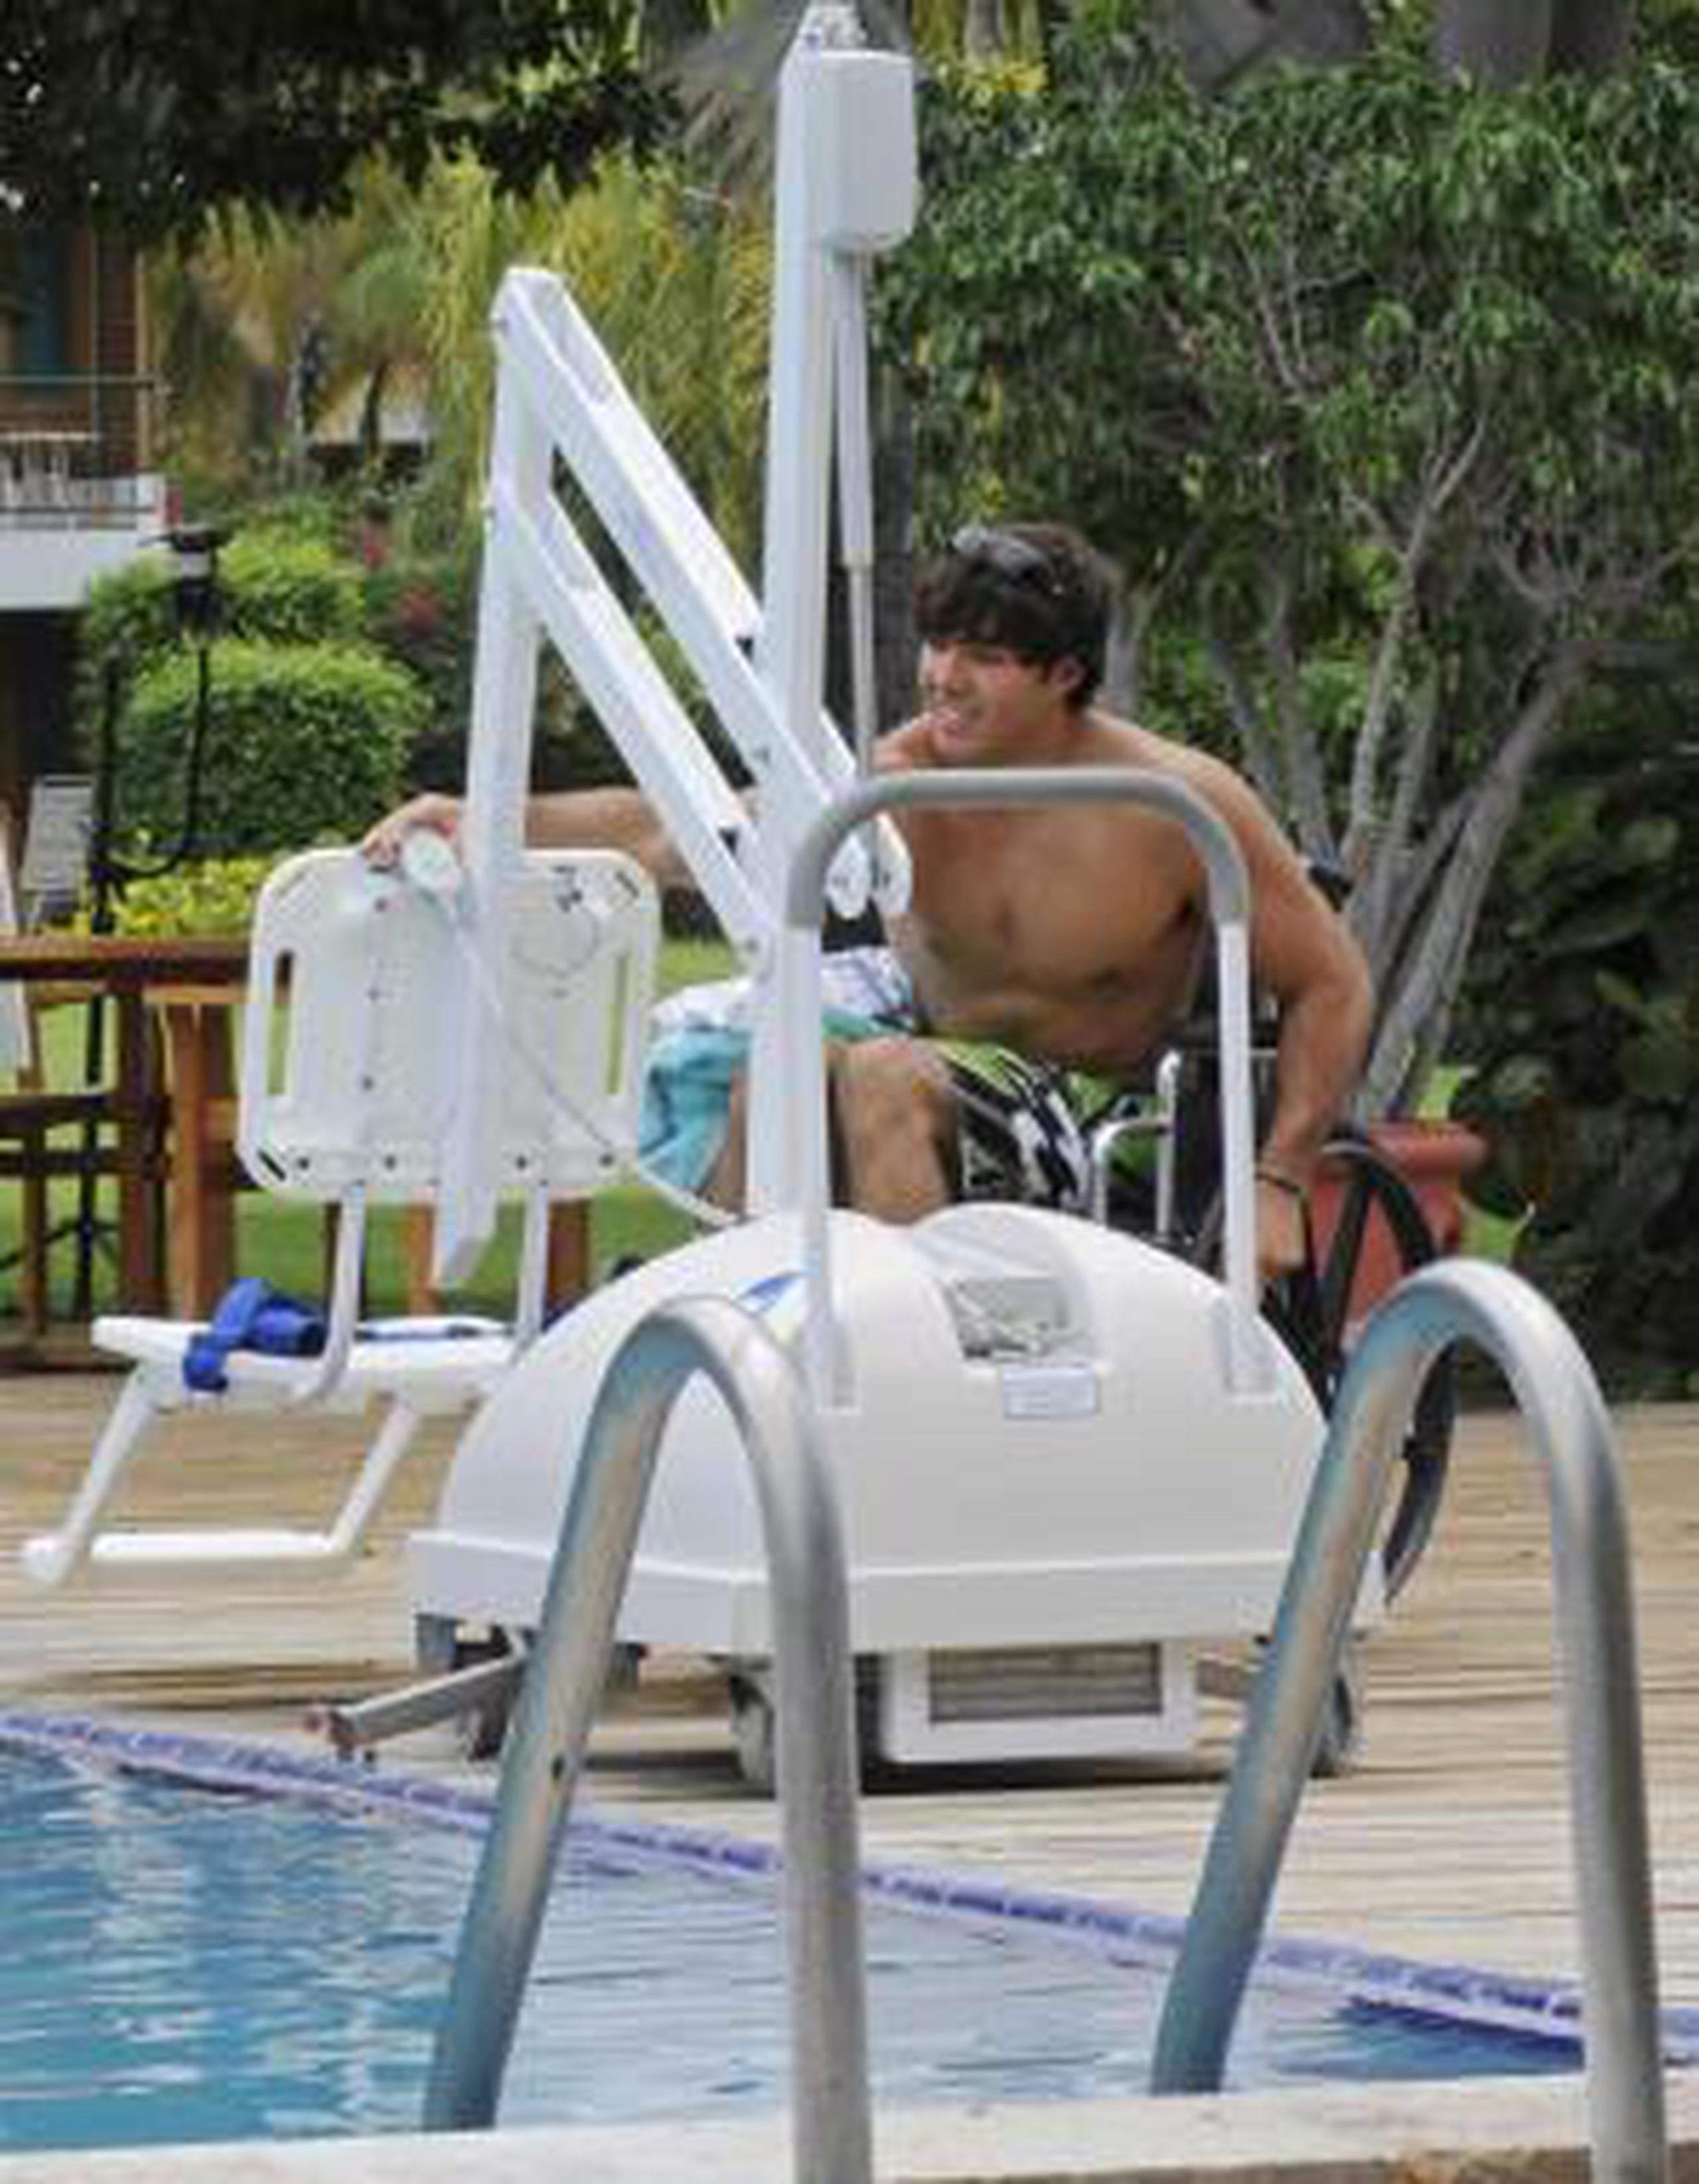 La foto muestra equipo especializado para que los discapacitados puedan entrar a bañarse en una piscina. (Archivo)